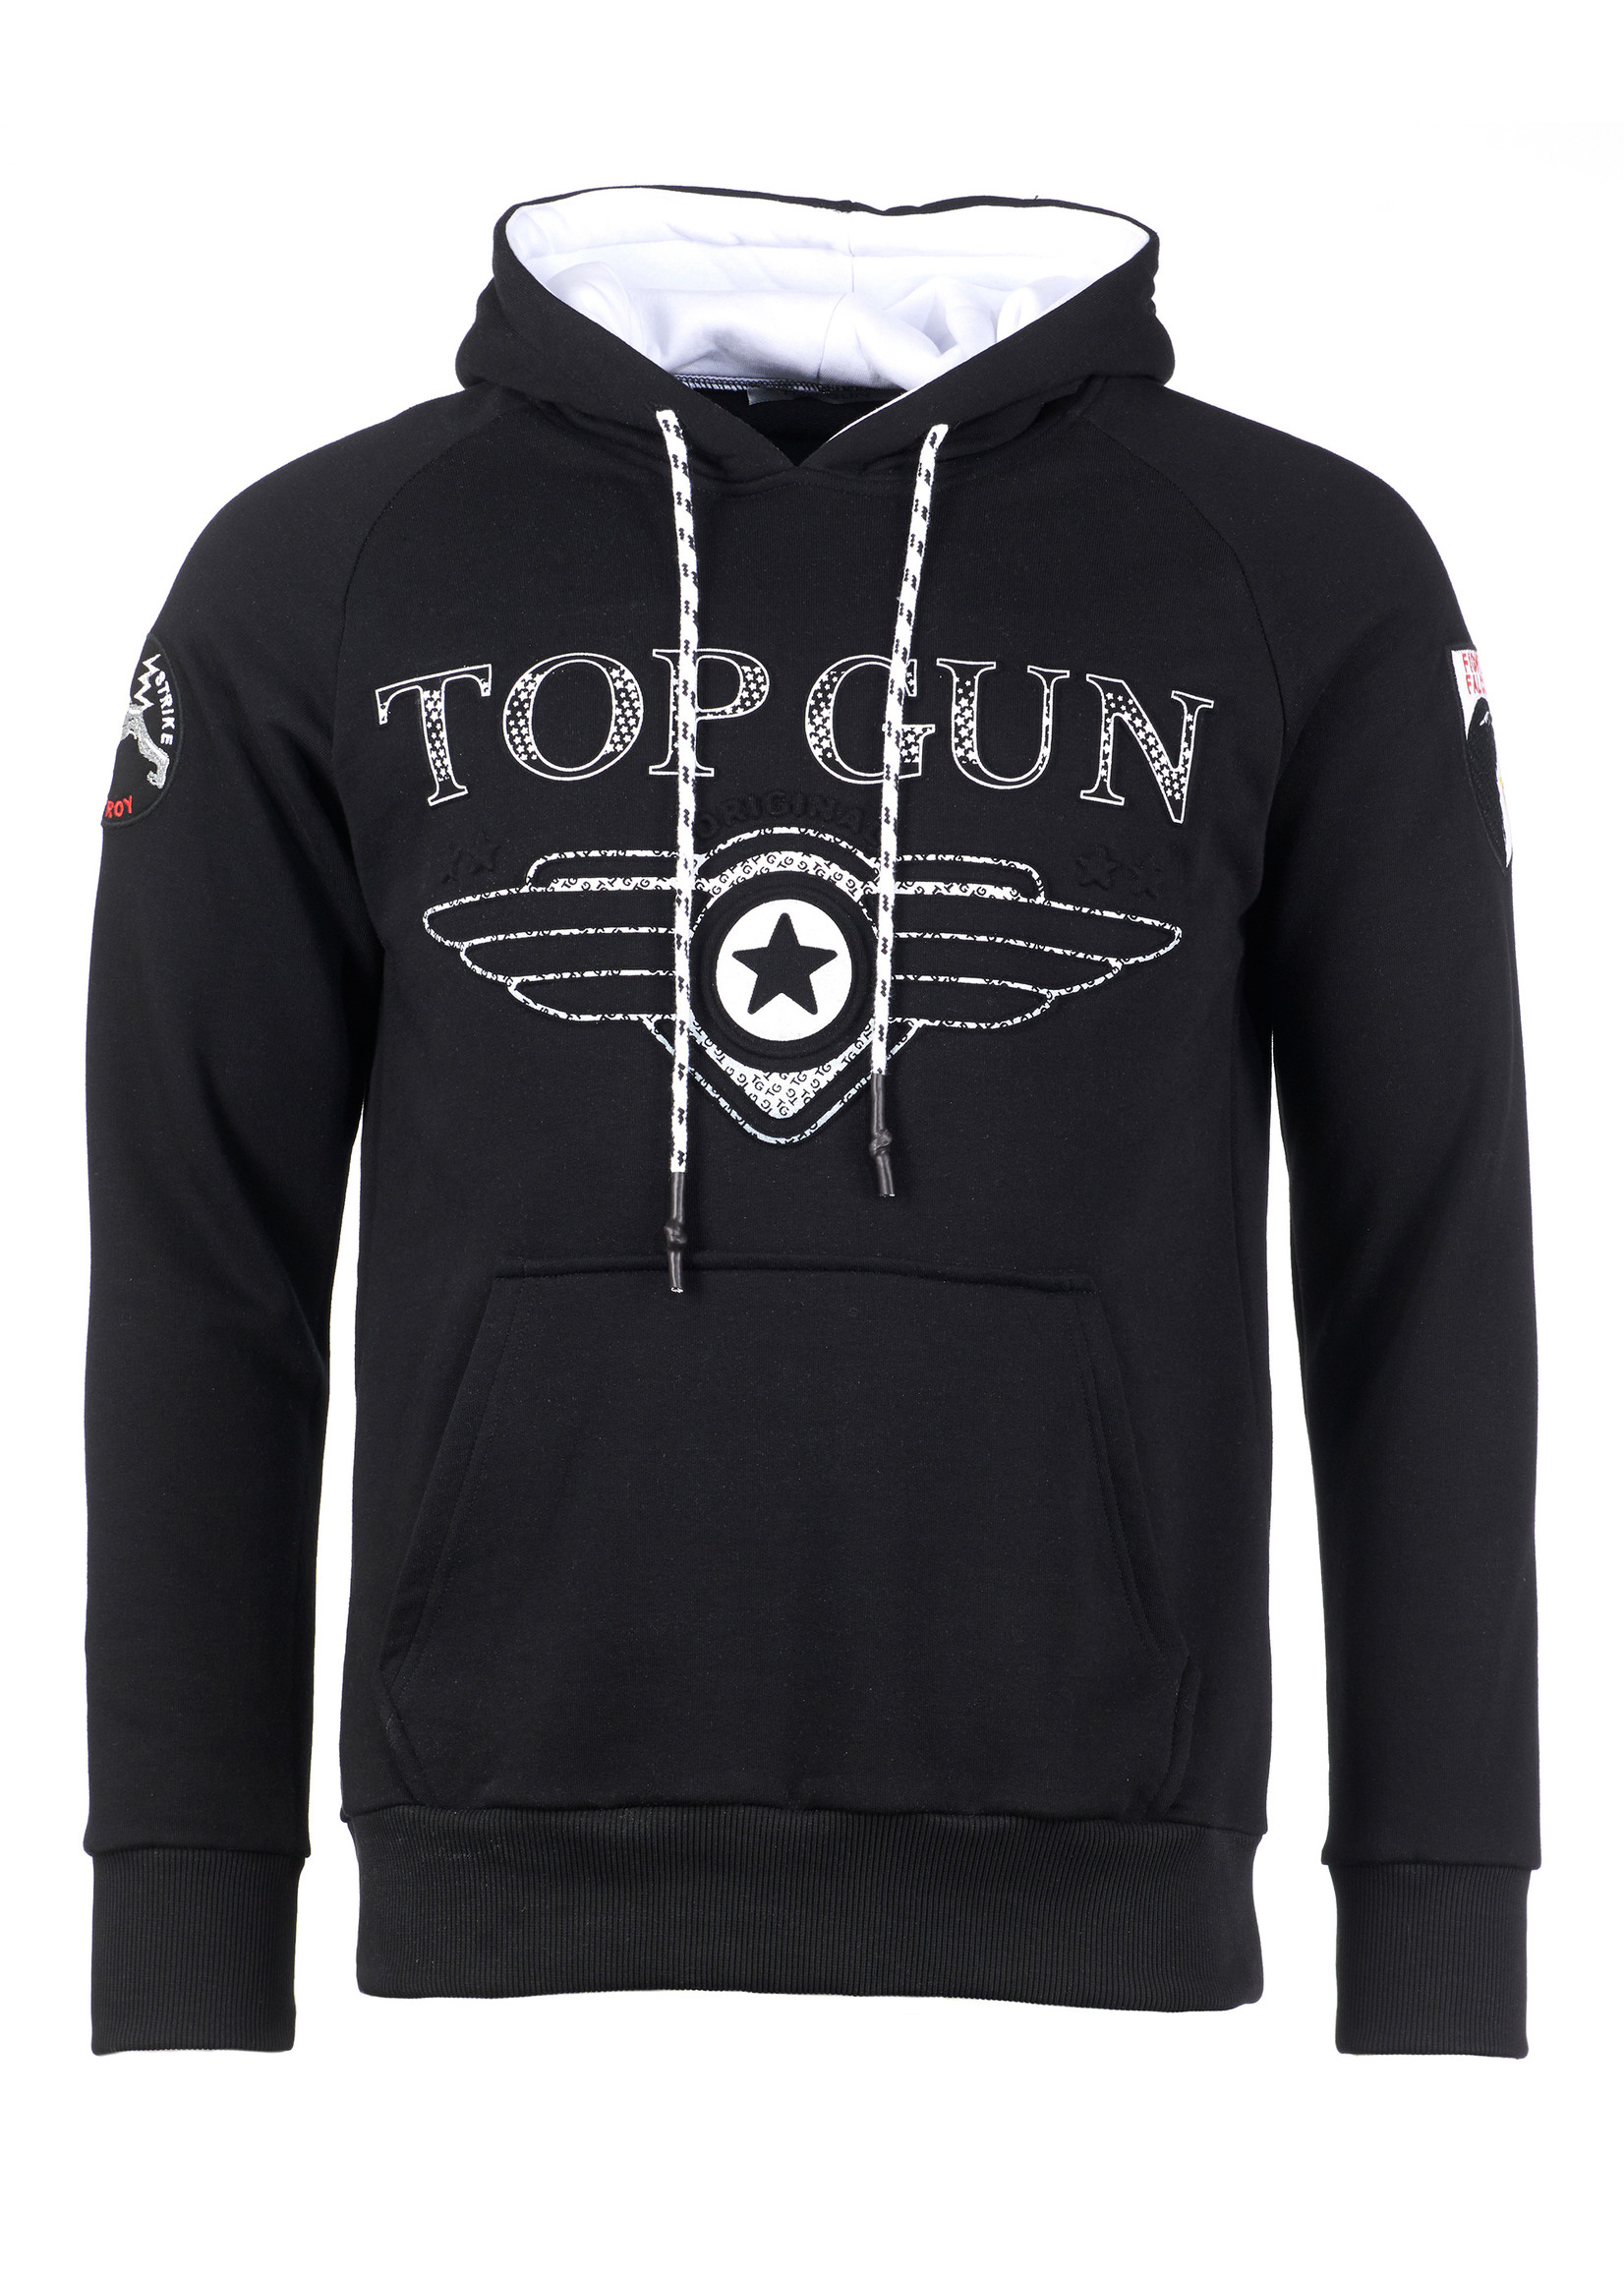 Top Gun Top Gun ® Hoodie sweatshirt  "Defend", Schwarz